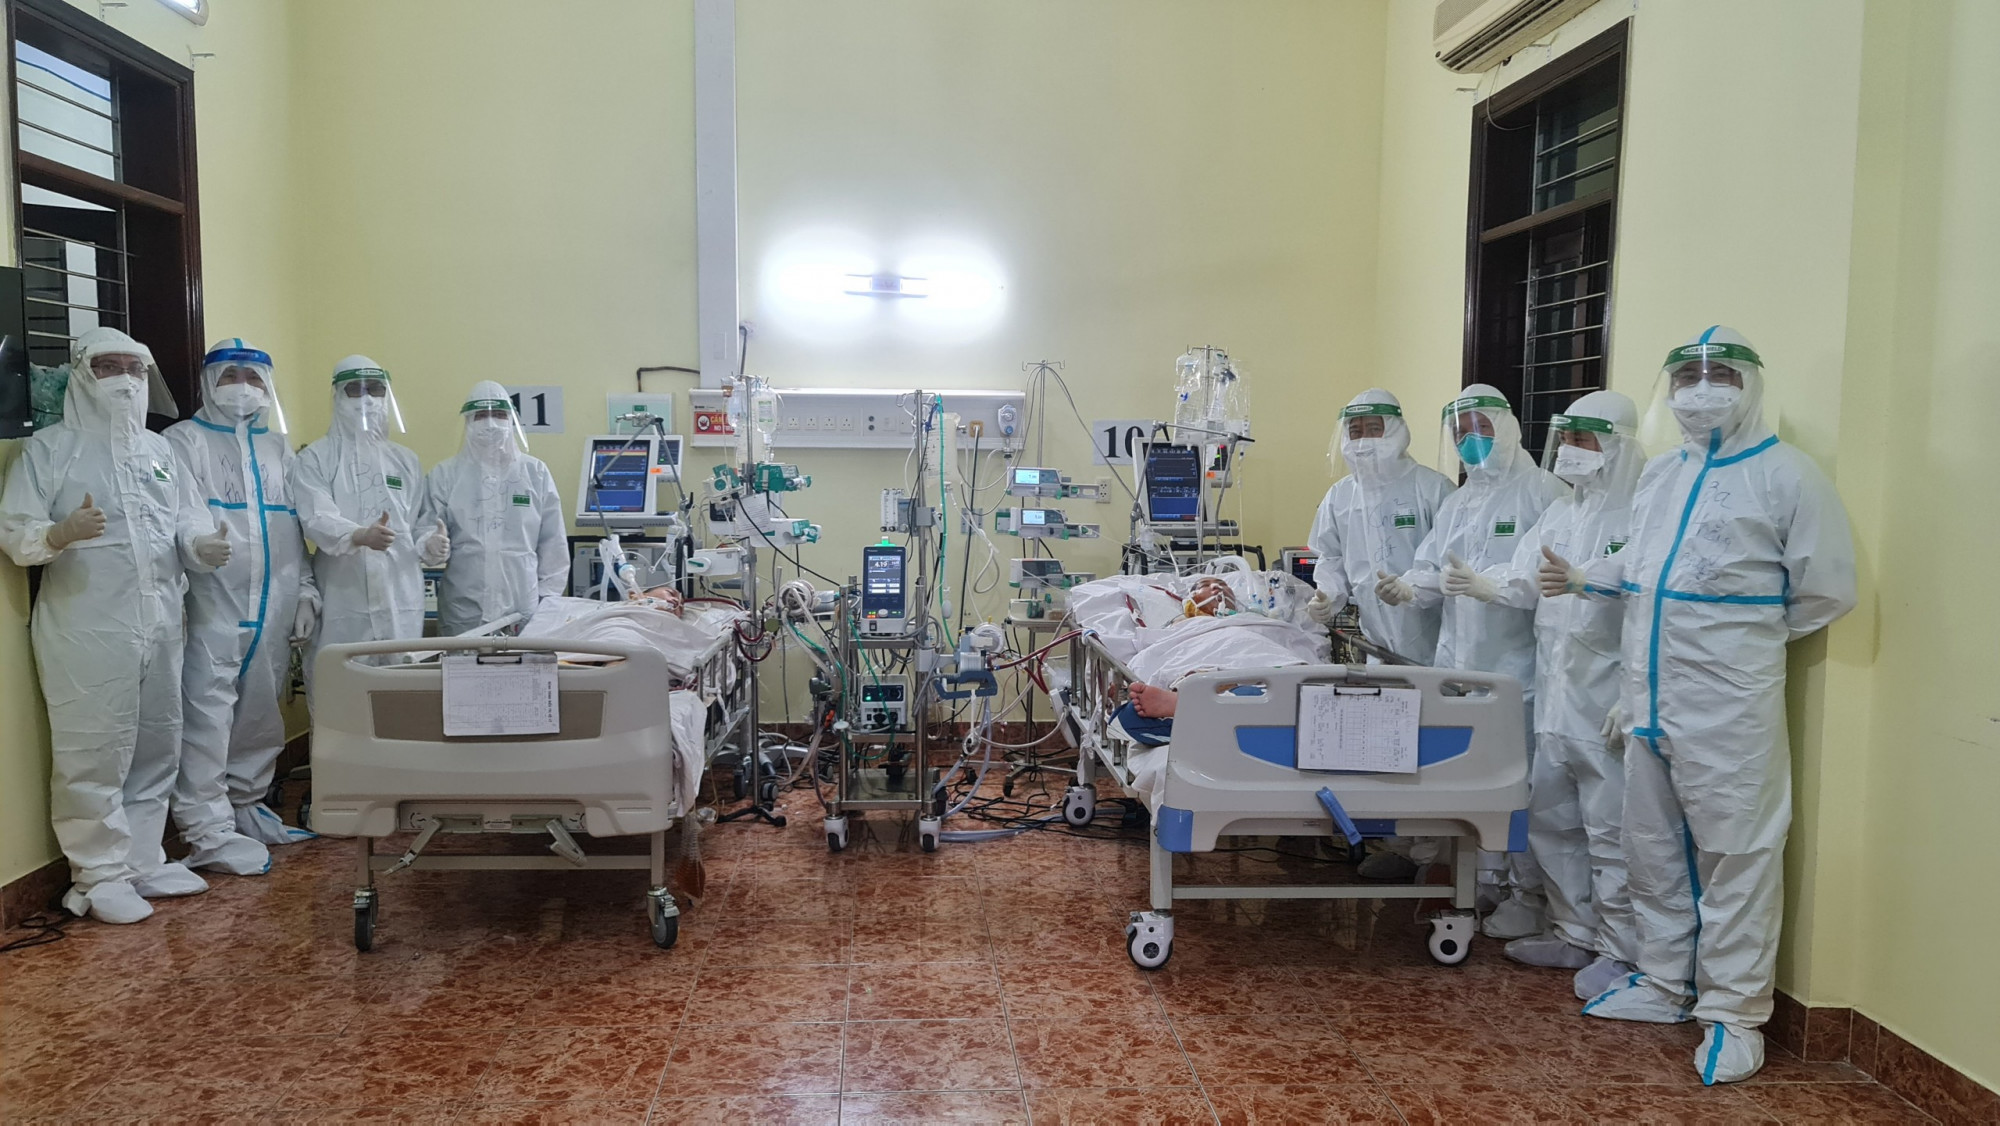 Chị H. sử dụng máy ECMO chung với bệnh nhân COVID-19 khác, ảnh Trần Chính